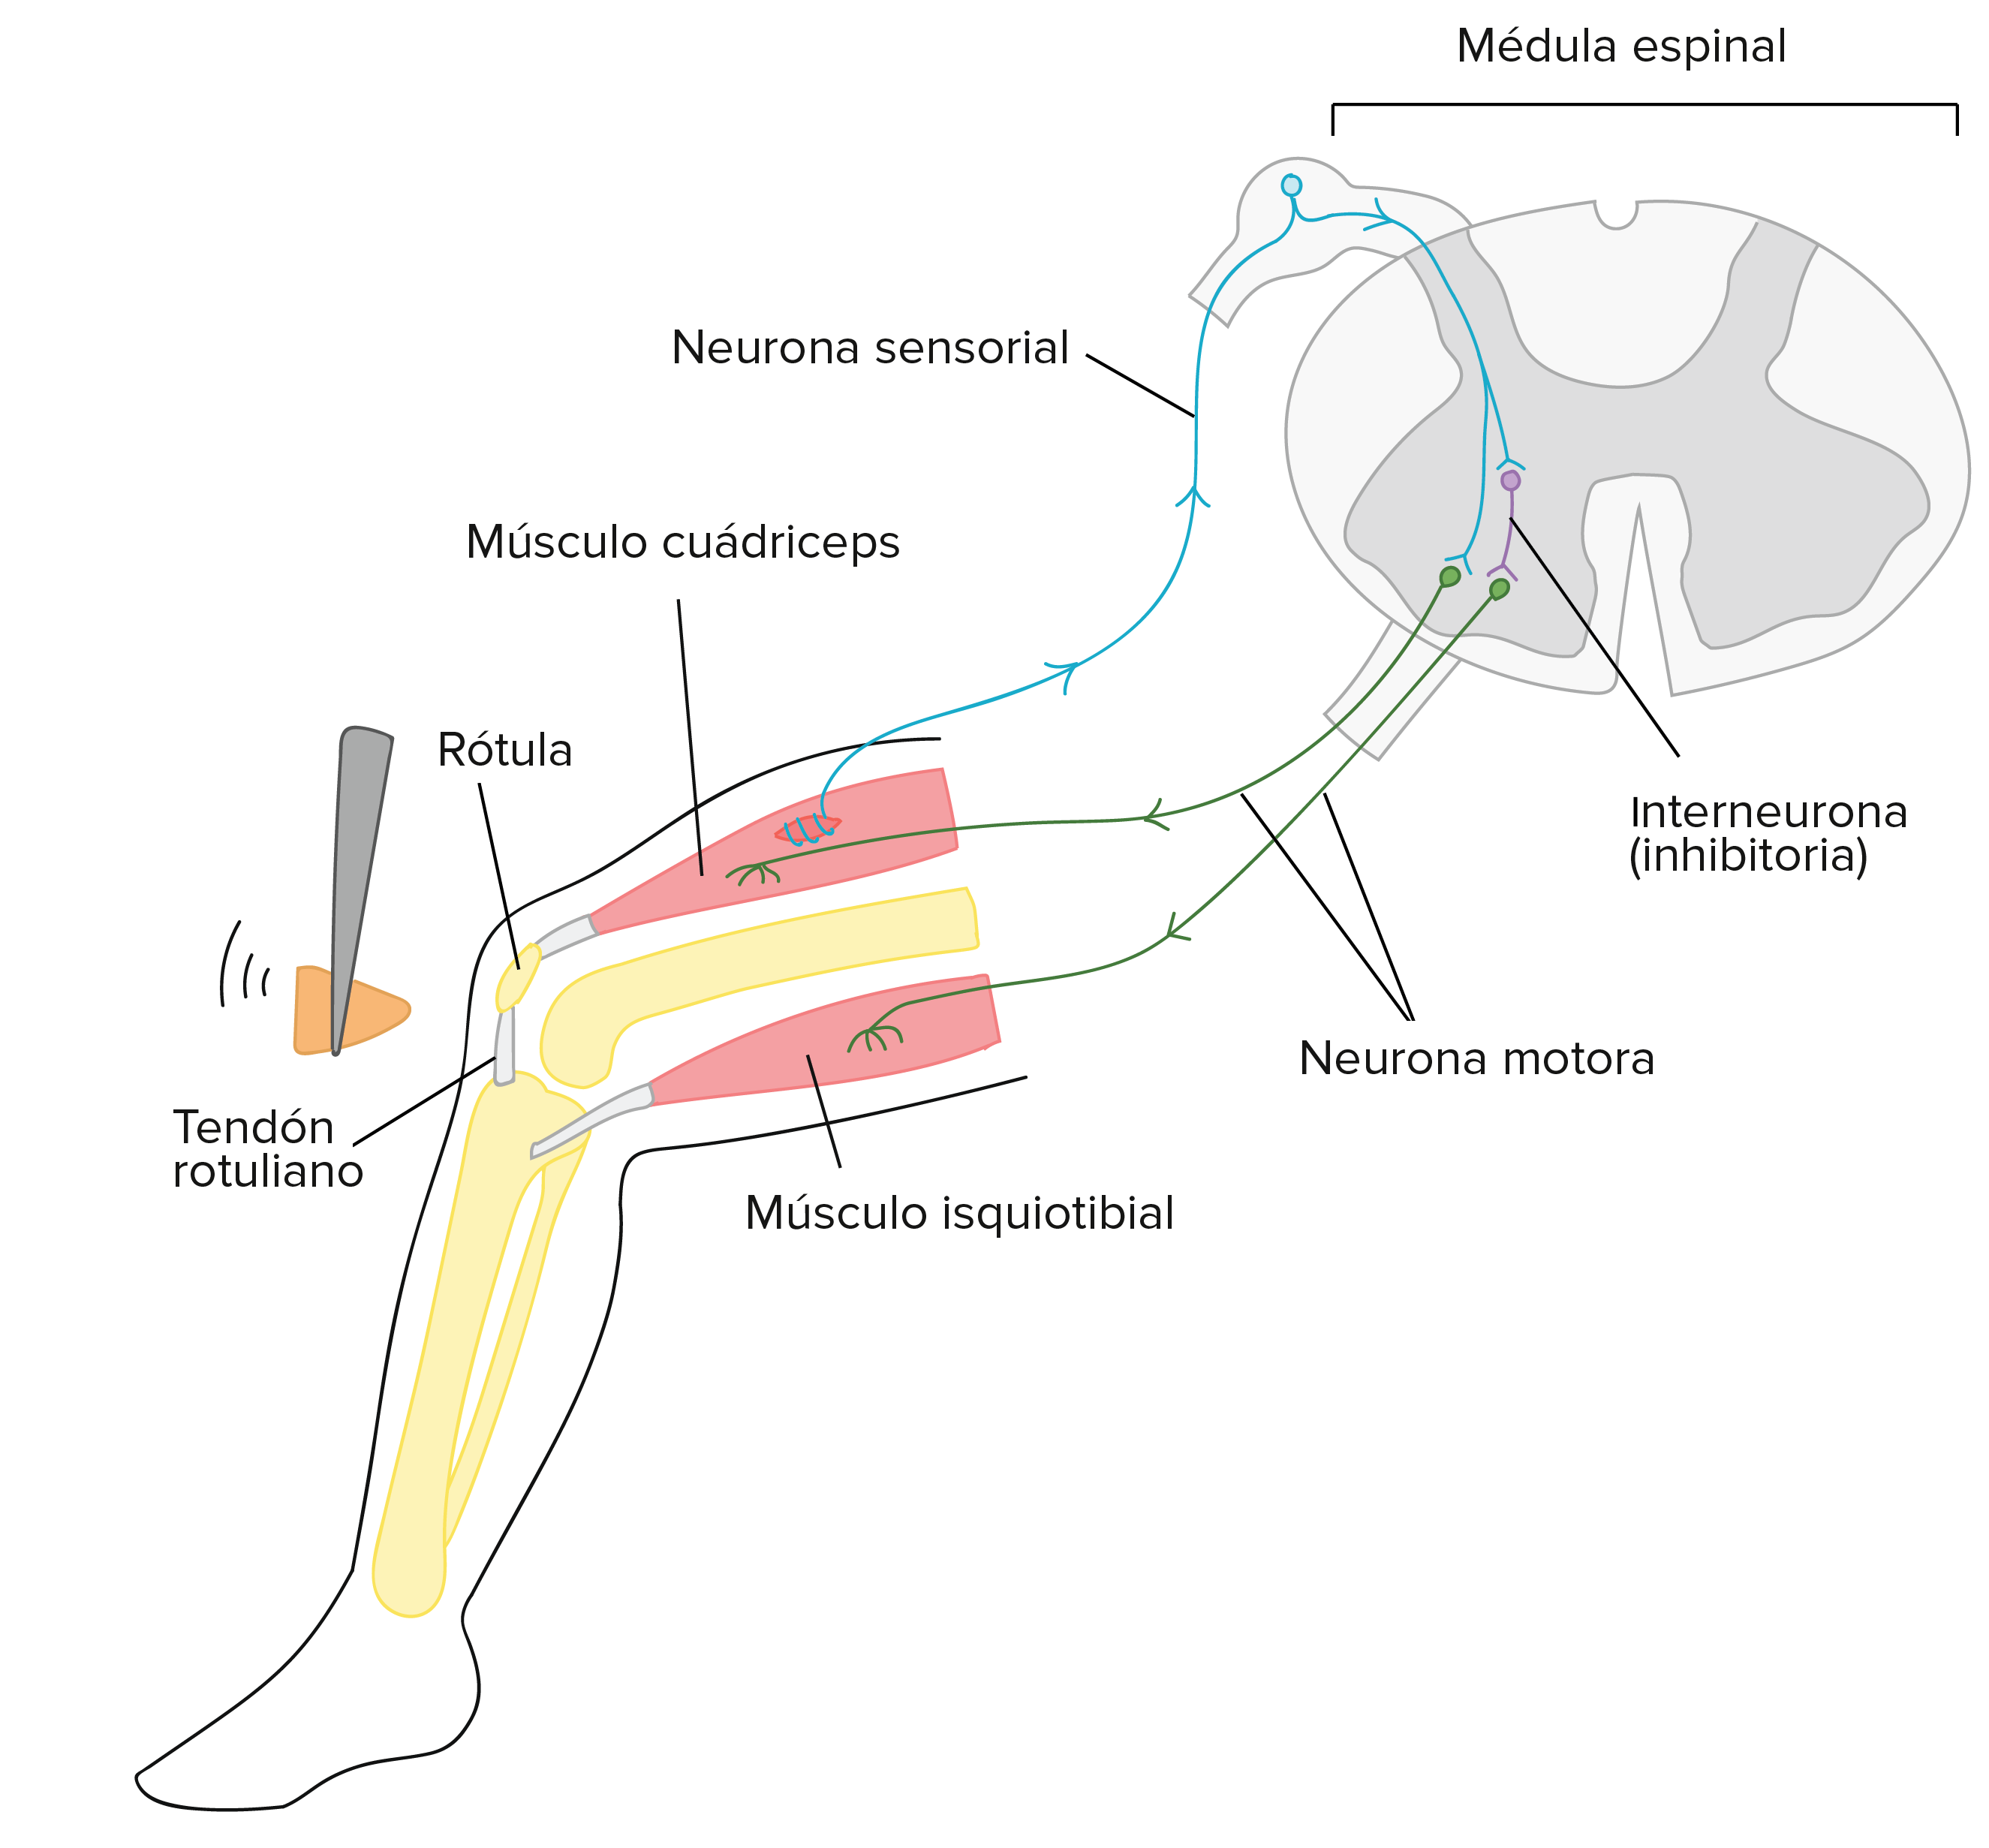 Diagrama simplificado de los circuitos neurales involucrados en el reflejo rotuliano. Cuando se golpea ligeramente el tendón rotuliano, el músculo cuádriceps que se encuentra en la parte frontal del muslo se estira y activa una neurona sensorial que envuelve la célula múscular. El axón de la neurona sensorial llega hasta la médula espinal, donde forma sinapsis con dos blancos:

1. La neurona motora que enerva el músculo cuádriceps. La neurona sensorial activa la neurona motora y causa la contracción del músculo cuádriceps.

2. La interneurona. La neurona sensorial activa la interneurona. Sin embargo, esta interneurona es inhibitoria en sí misma y el blanco de su inhibición es una neurona motora que viaja hasta el músculo isquiotibial en la parte posterior del muslo. Así, la activación de la neurona sensorial sirve para inhibir la contracción en el músculo isquiotibial. Por lo tanto, el músculo isquiotibial se relaja y facilita la contracción del músculo cuádriceps (al cual antagoniza el músculo isquiotibial).